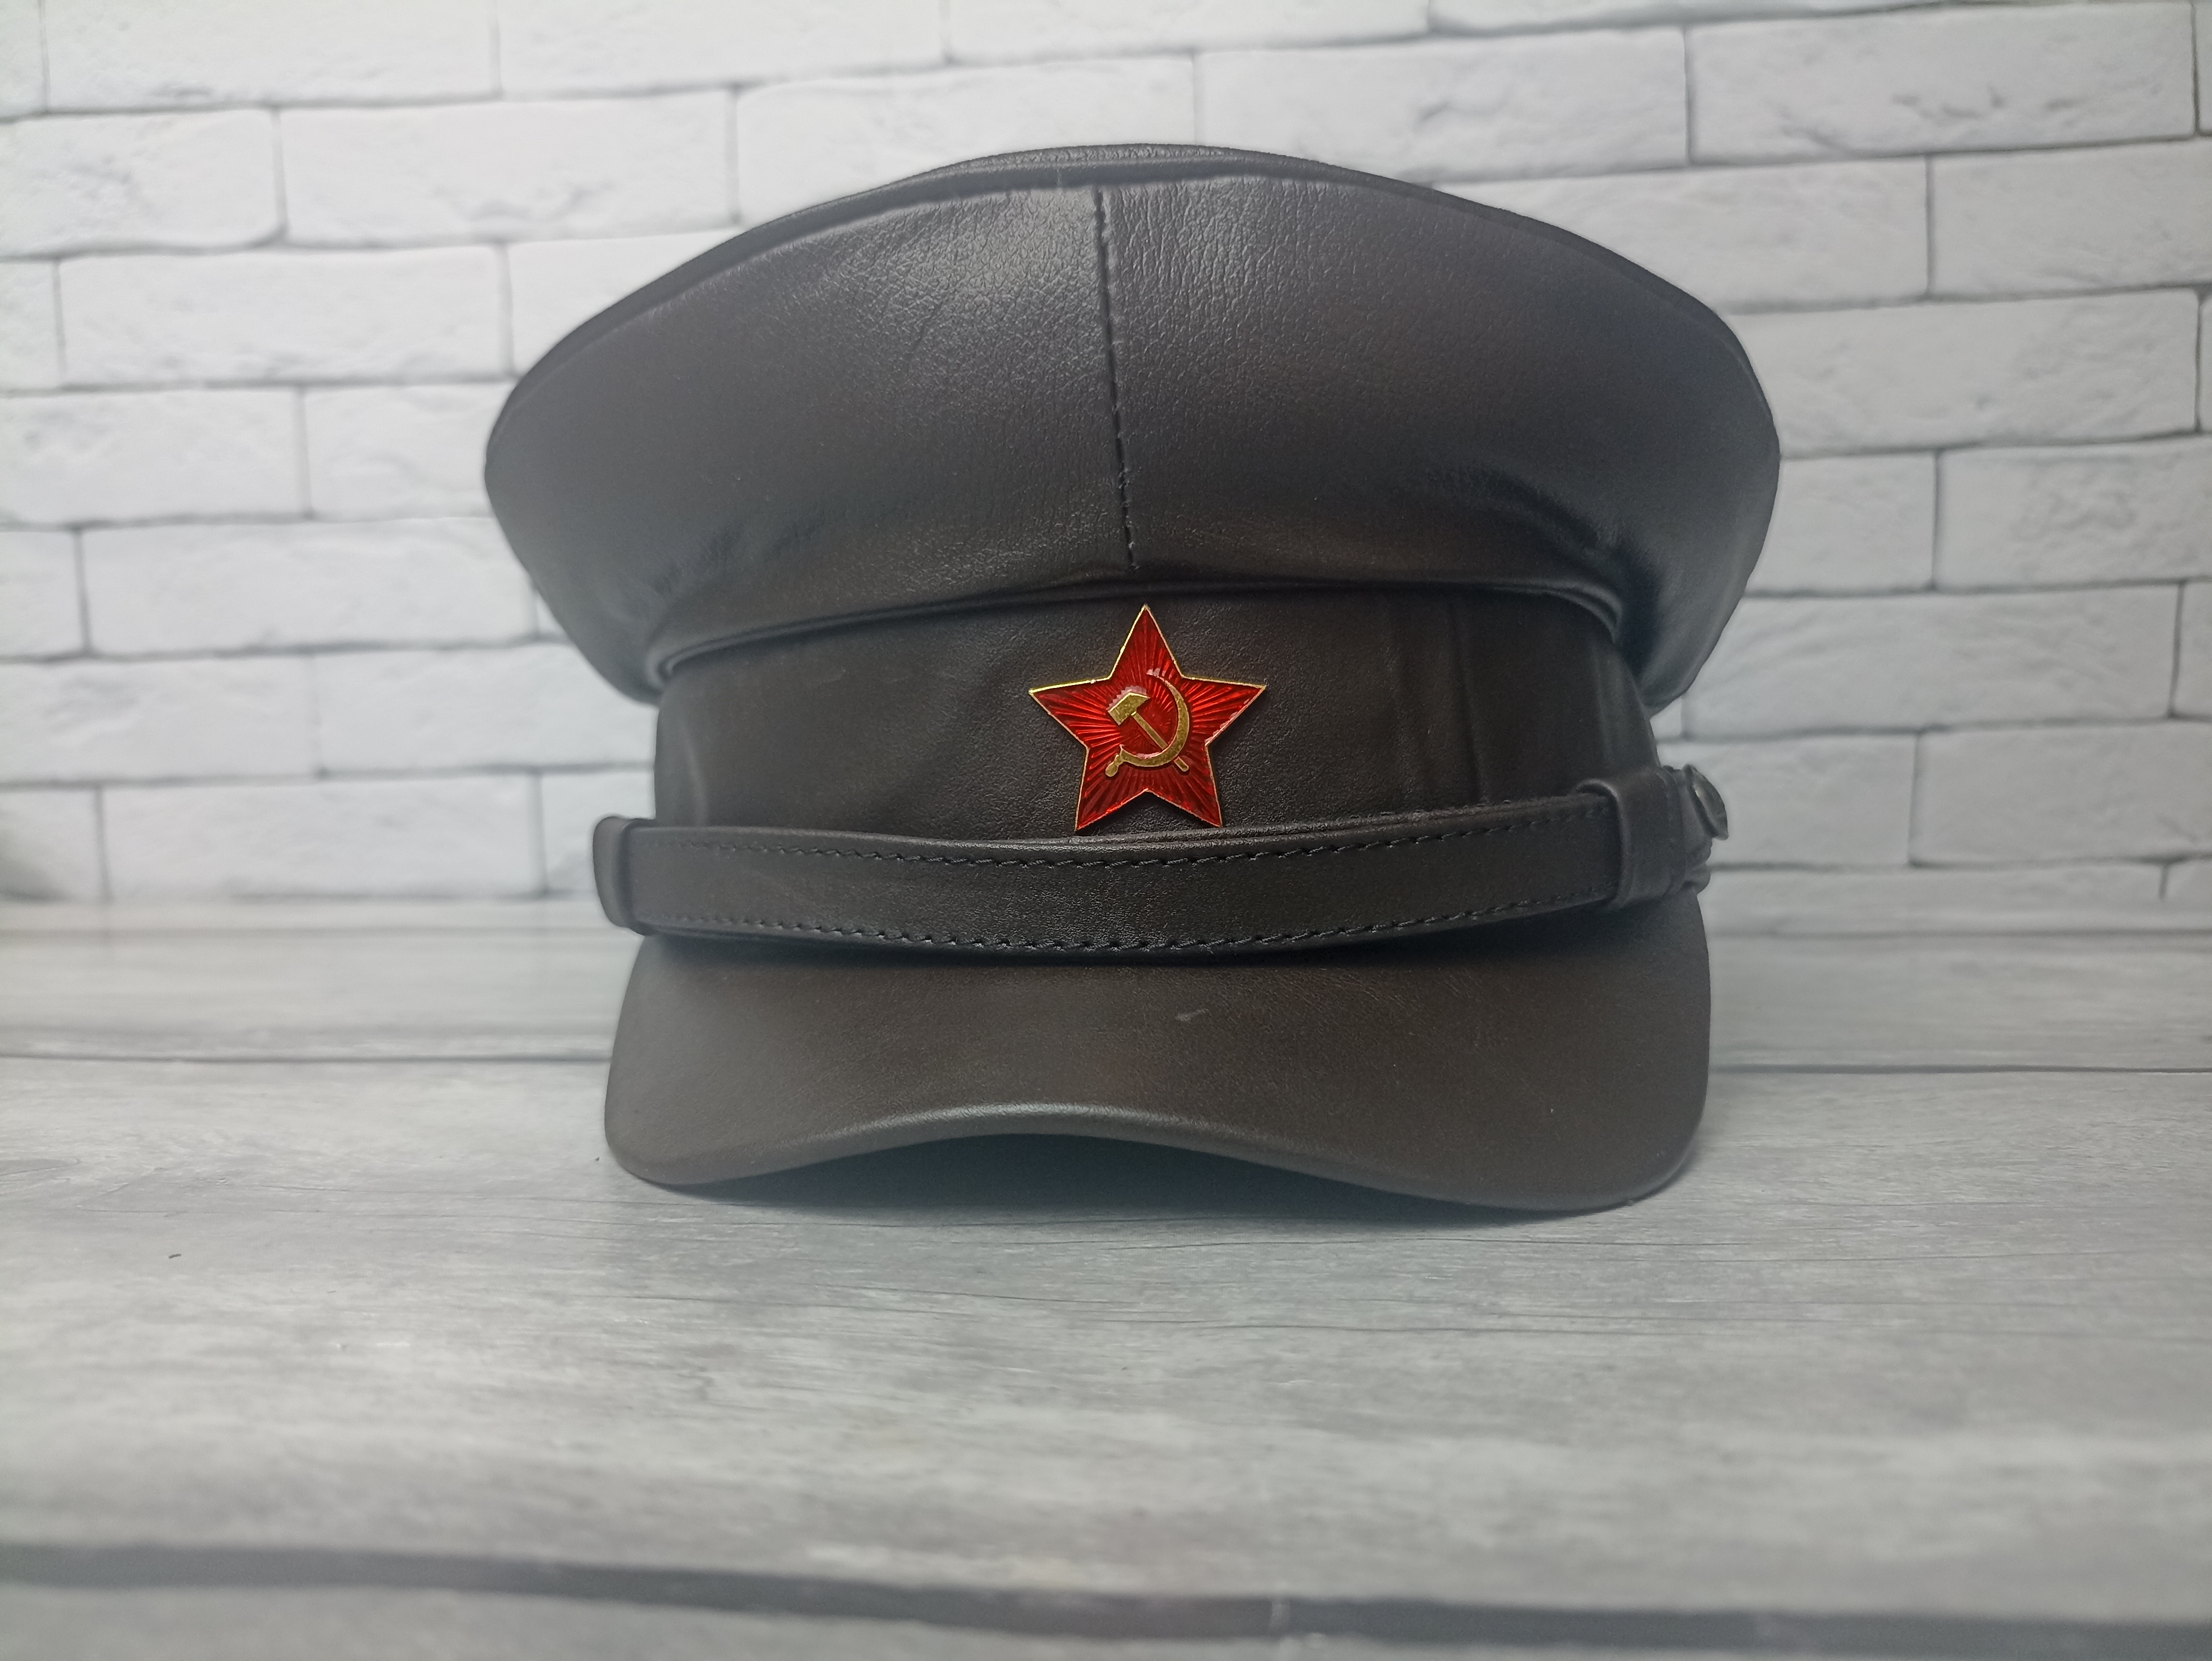 Фуражка ЧК НКВД коричневая кожа, квадратный козырек (РЕПРО СССР)